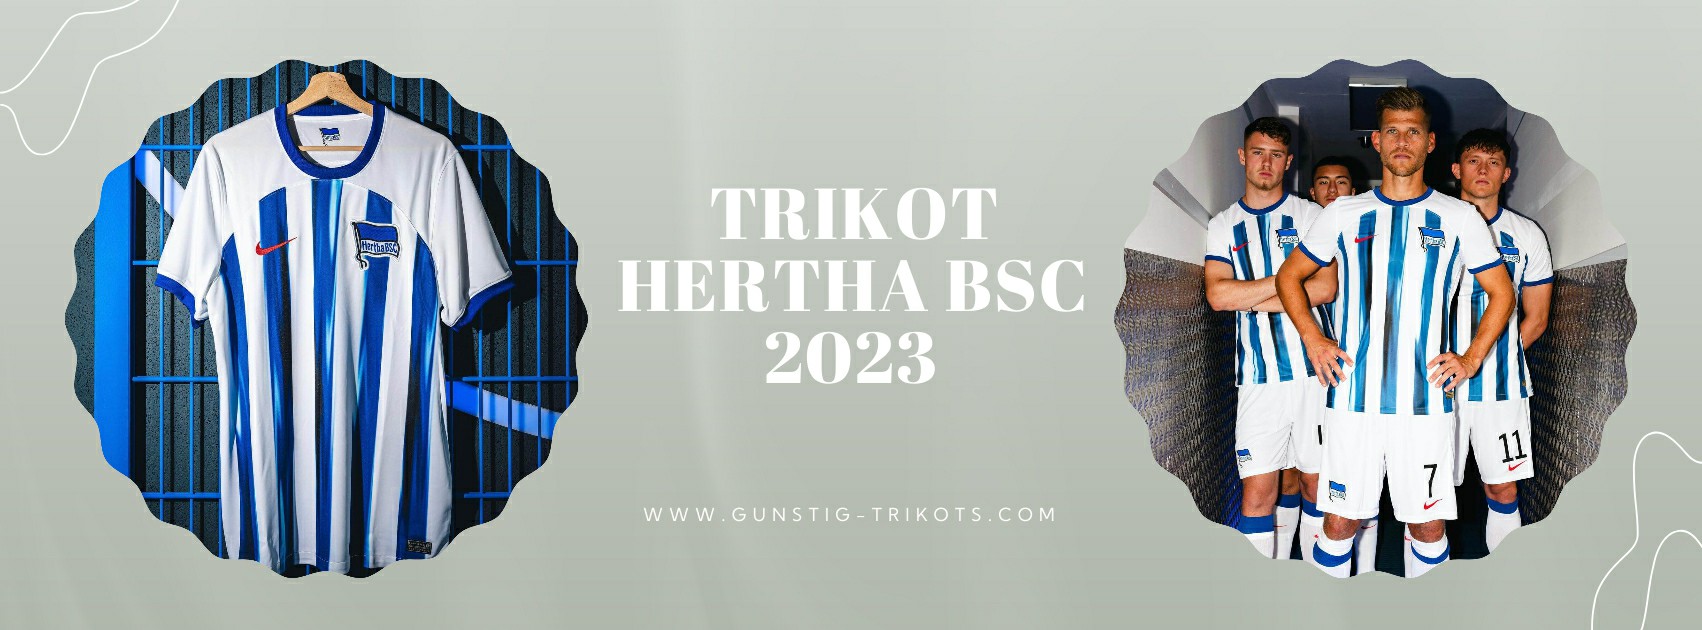 Hertha BSC Trikot 2023-2024